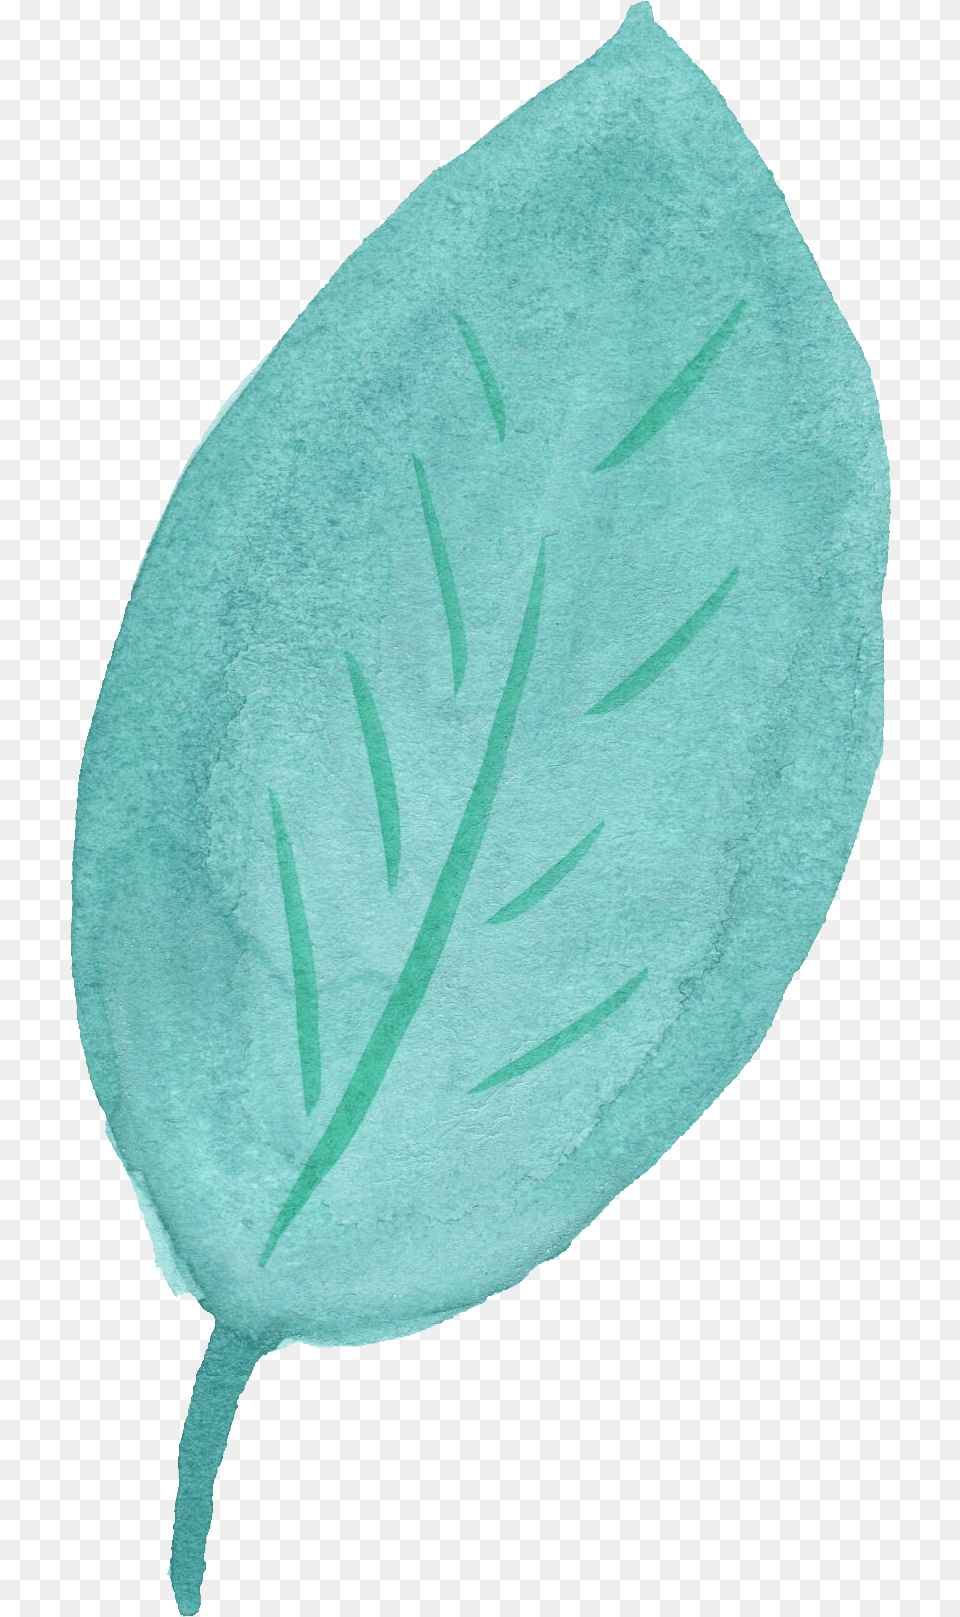 Watercolor Leaf Vol Blue Leaf Transparent Background, Plant, Flower, Animal, Fish Free Png Download